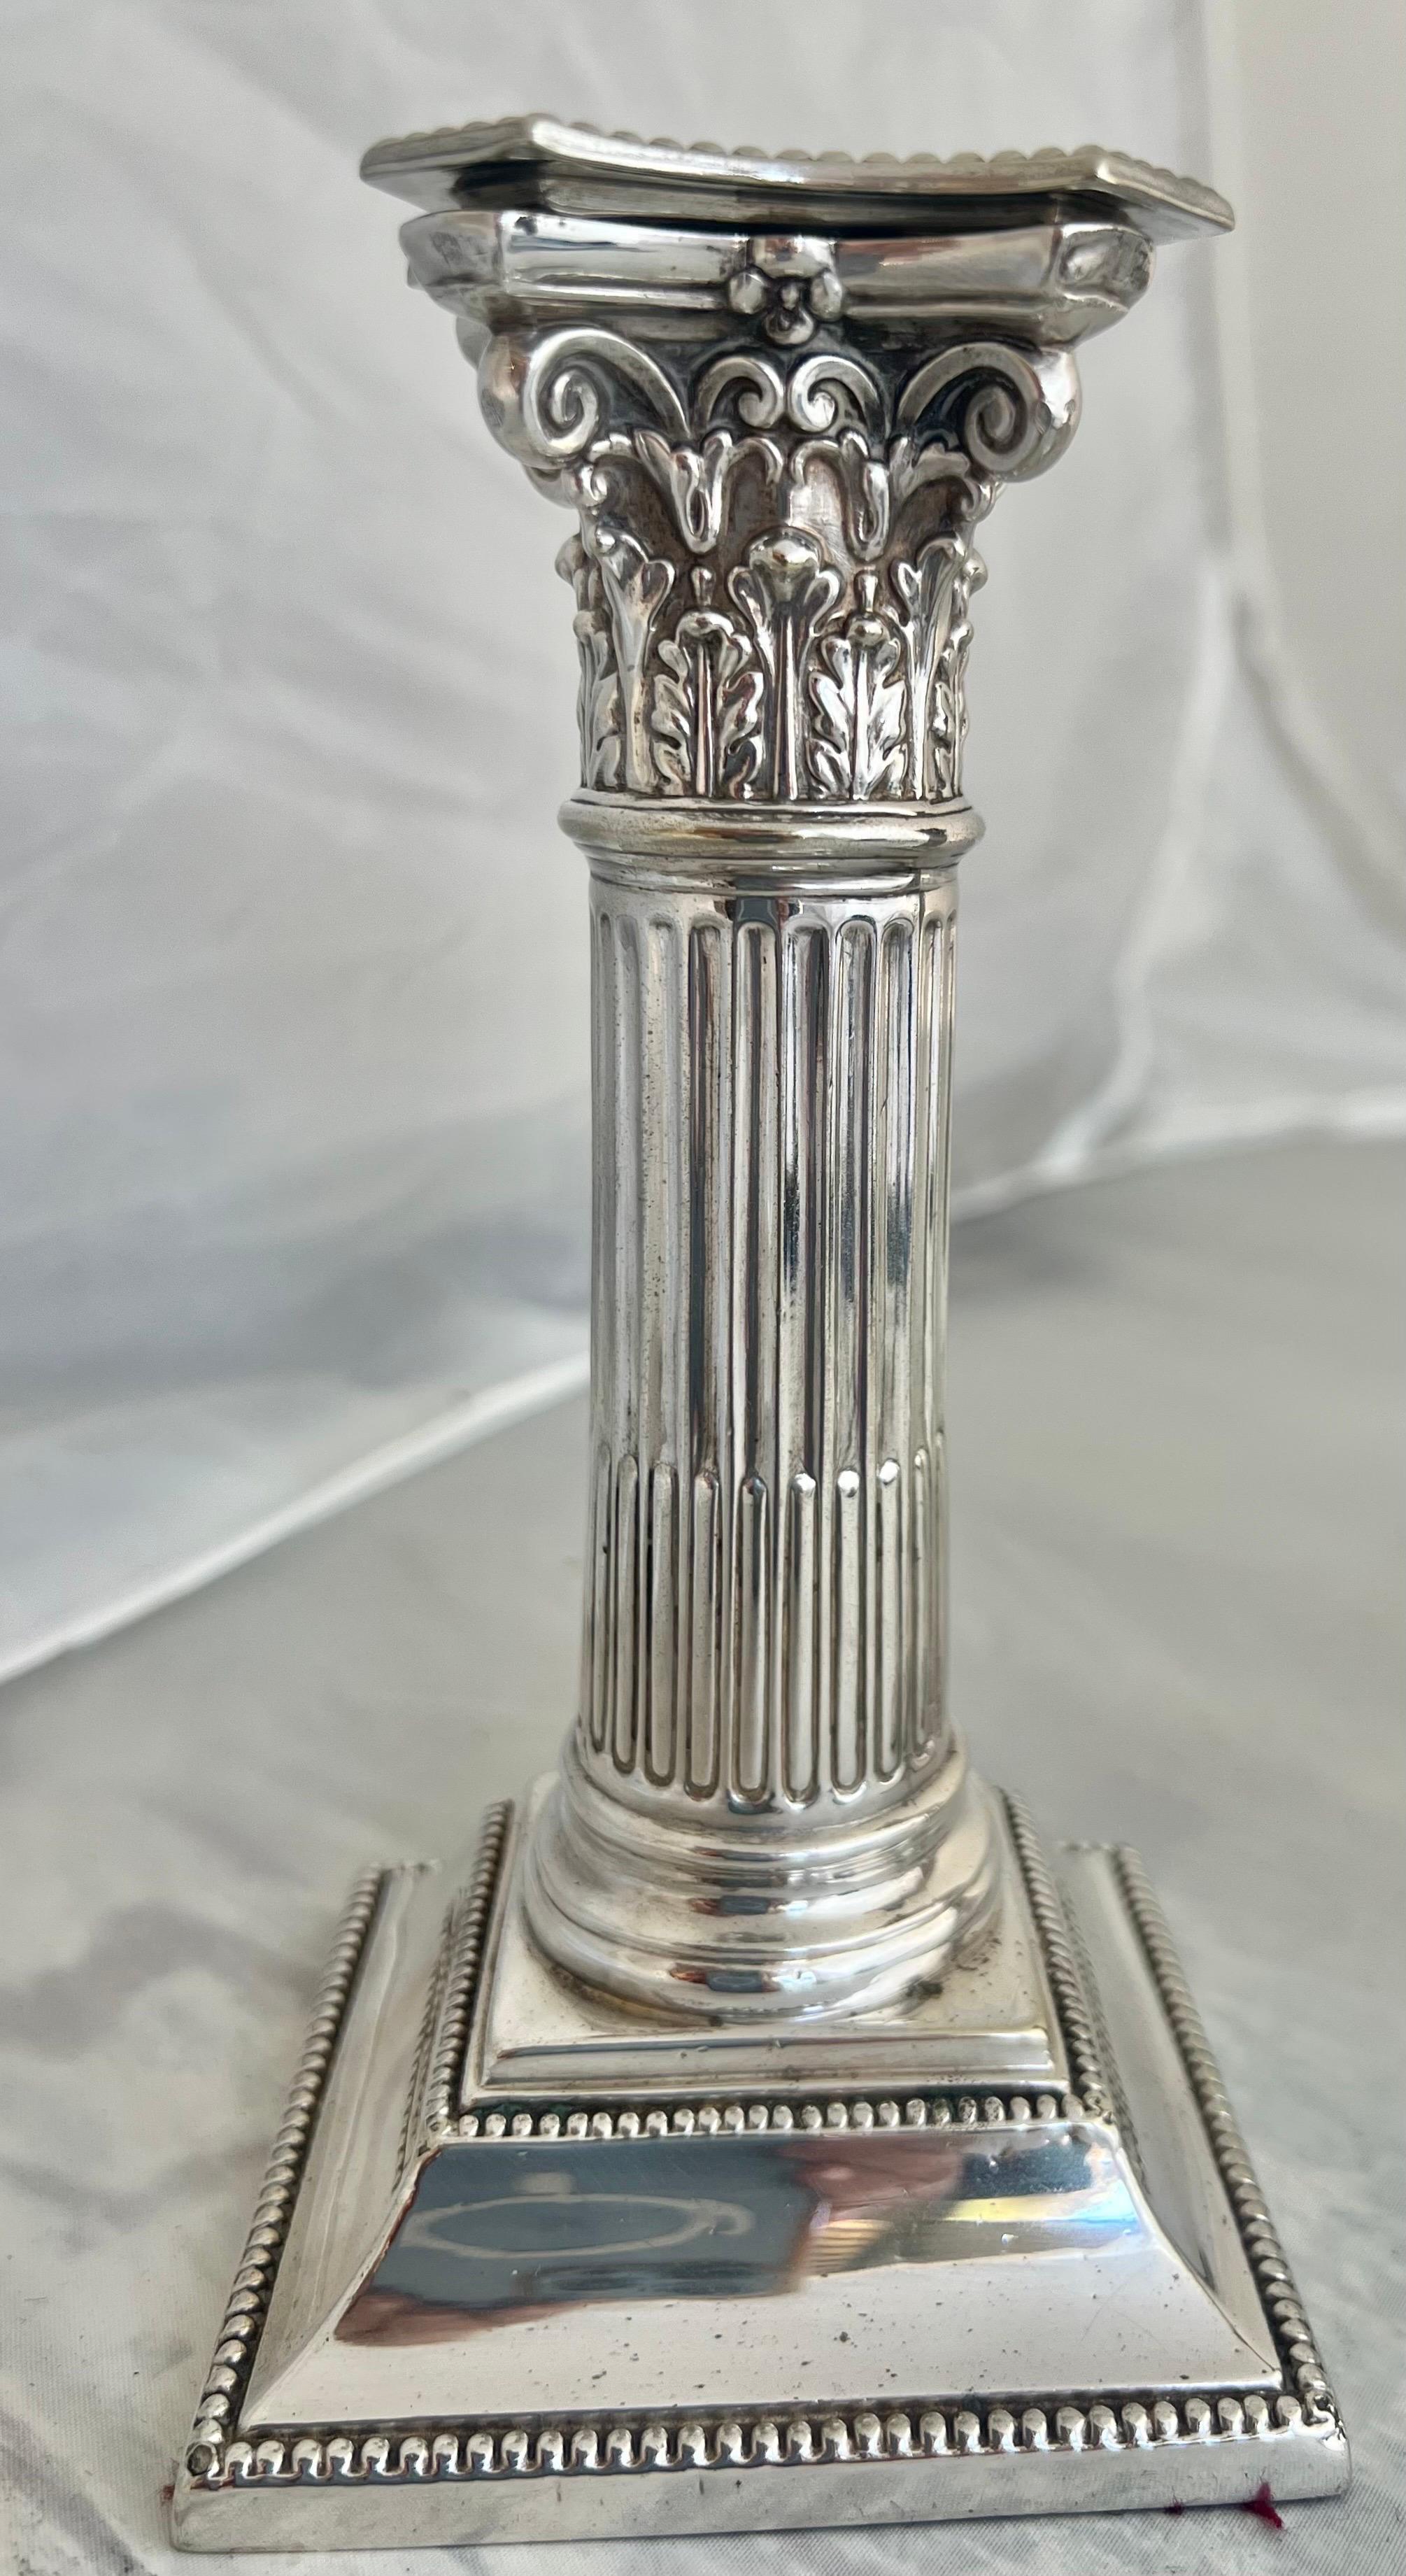 Die in England hergestellten Sheffield-Kerzenhalter haben ein elegantes Säulen-Design mit korinthischen Kapitellen und sind mit perlenbesetzten Bobeches verziert, die ihnen einen raffinierten Touch verleihen.